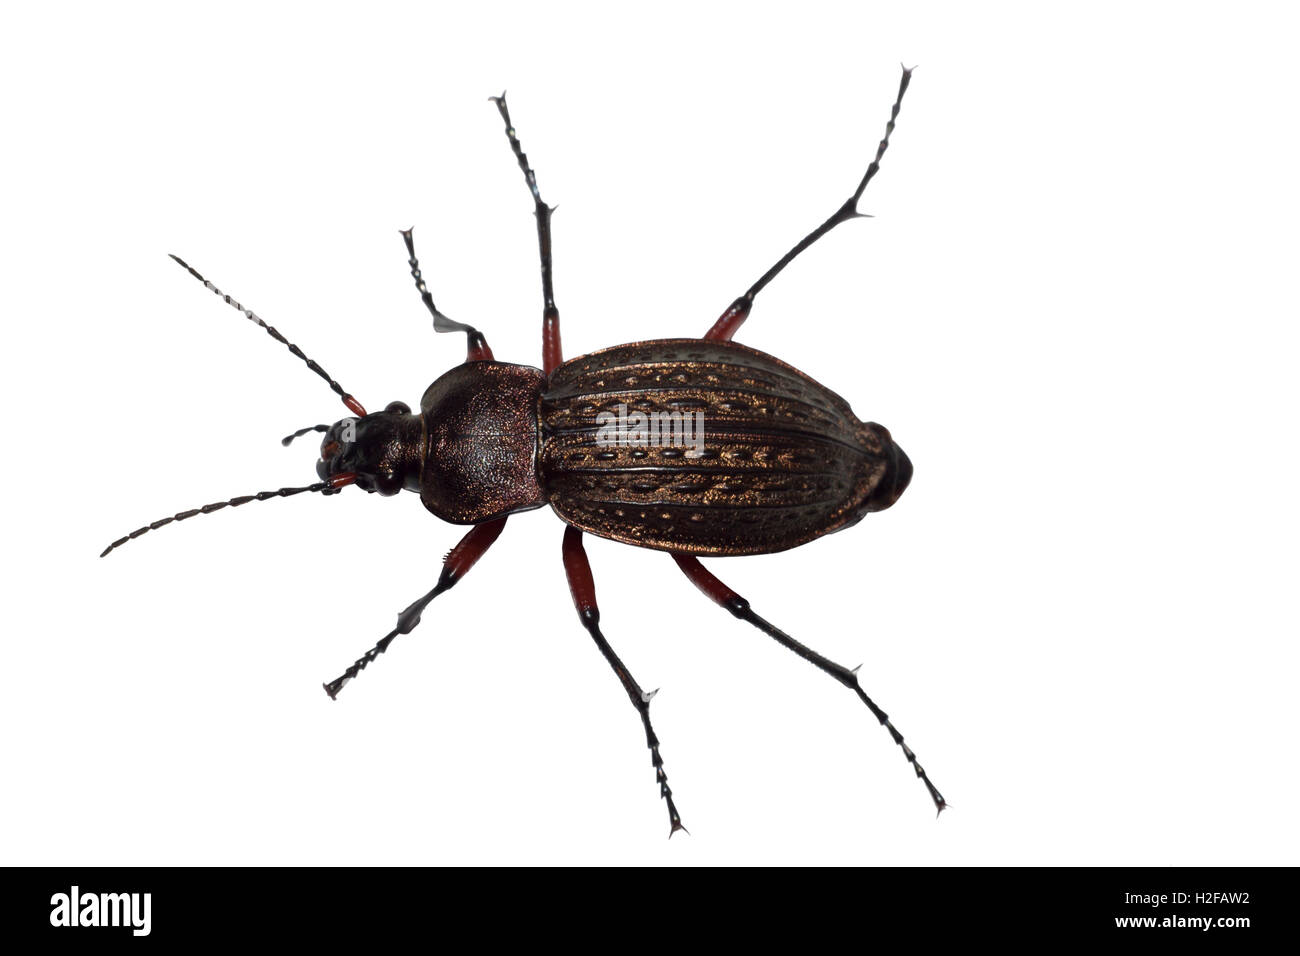 Ground beetle (Carabus granulatus) isolated on white background Stock Photo